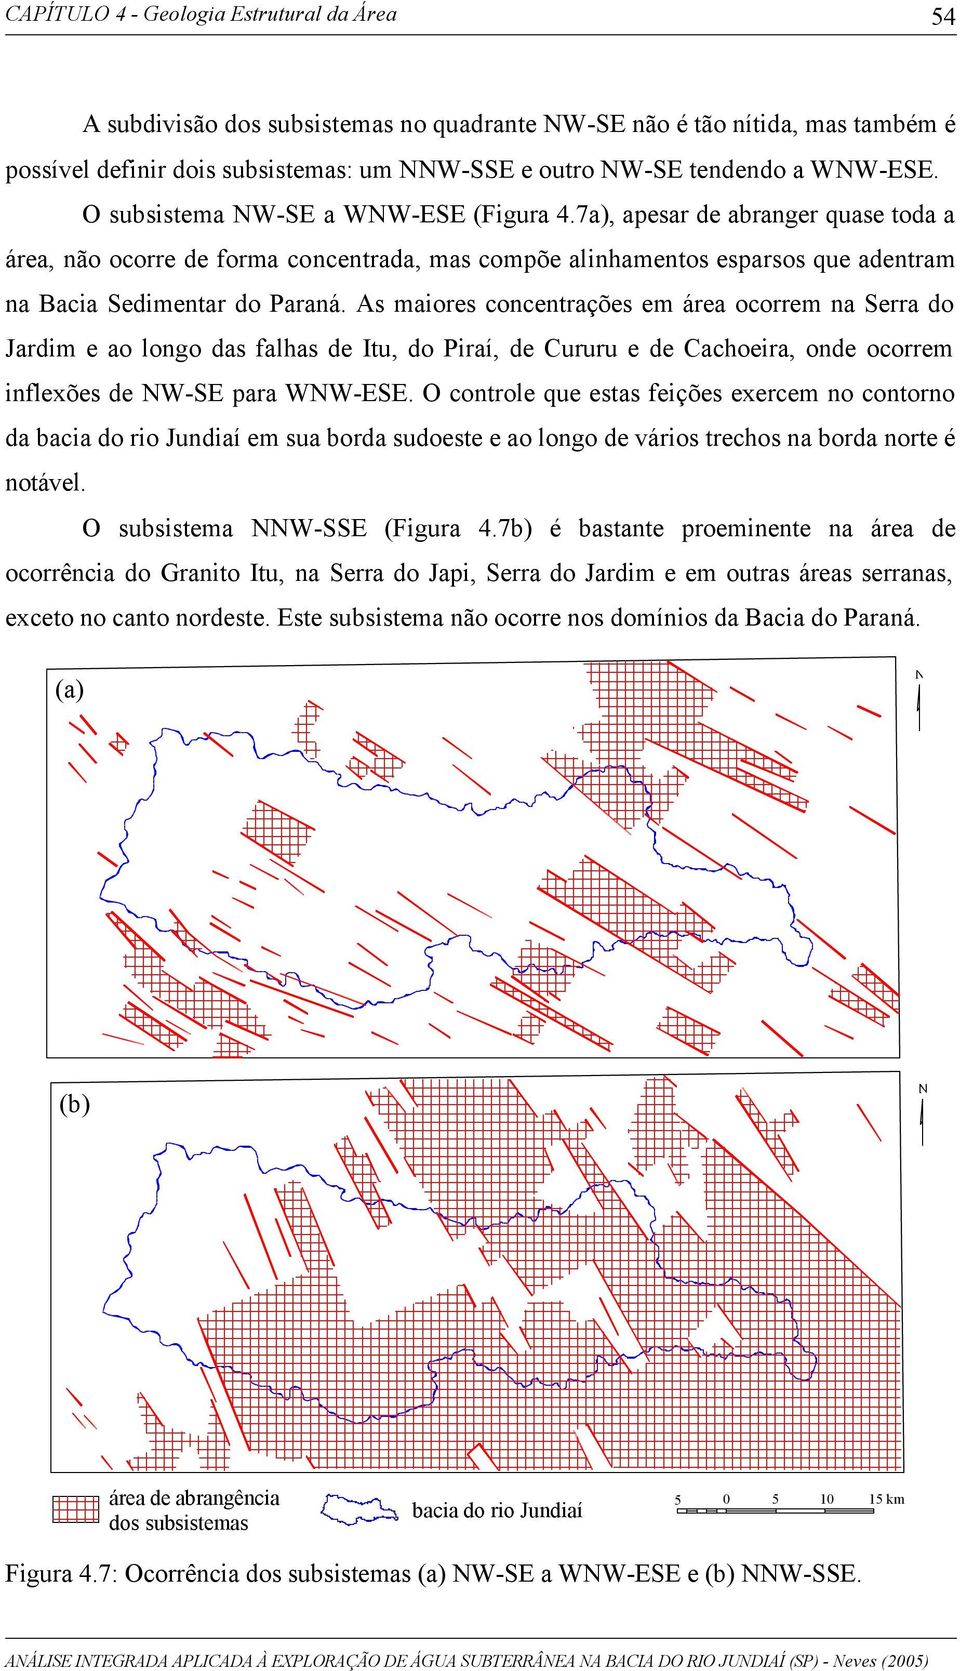 As maiores concentrações em área ocorrem na Serra do Jardim e ao longo das falhas de Itu, do Piraí, de Cururu e de Cachoeira, onde ocorrem inflexões de NW-SE para WNW-ESE.